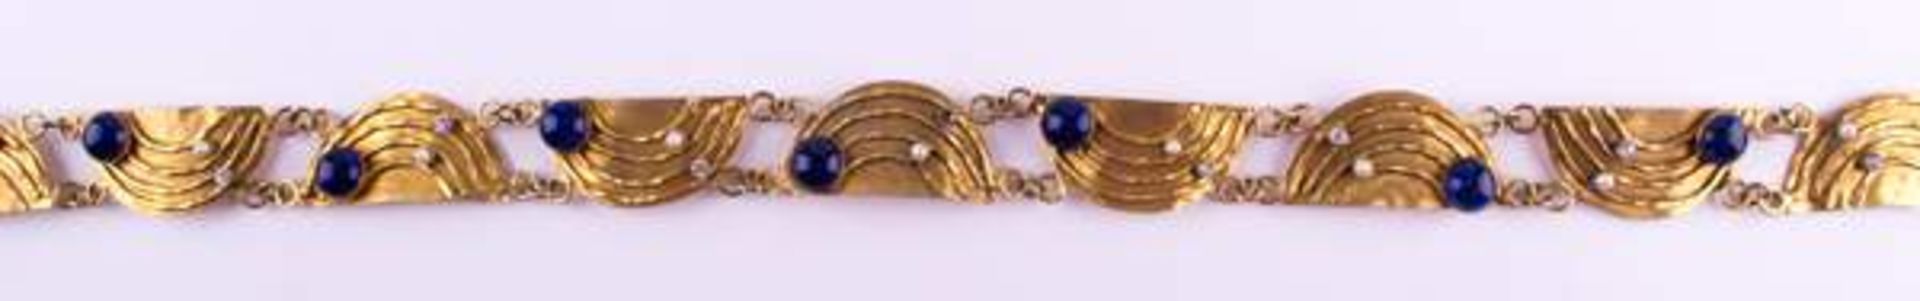 Schmuckgürtel Arabisch / Jewellery belt, Arabianmit verschiedenem Steinbesatz, Lapislazuli, echte - Bild 4 aus 6